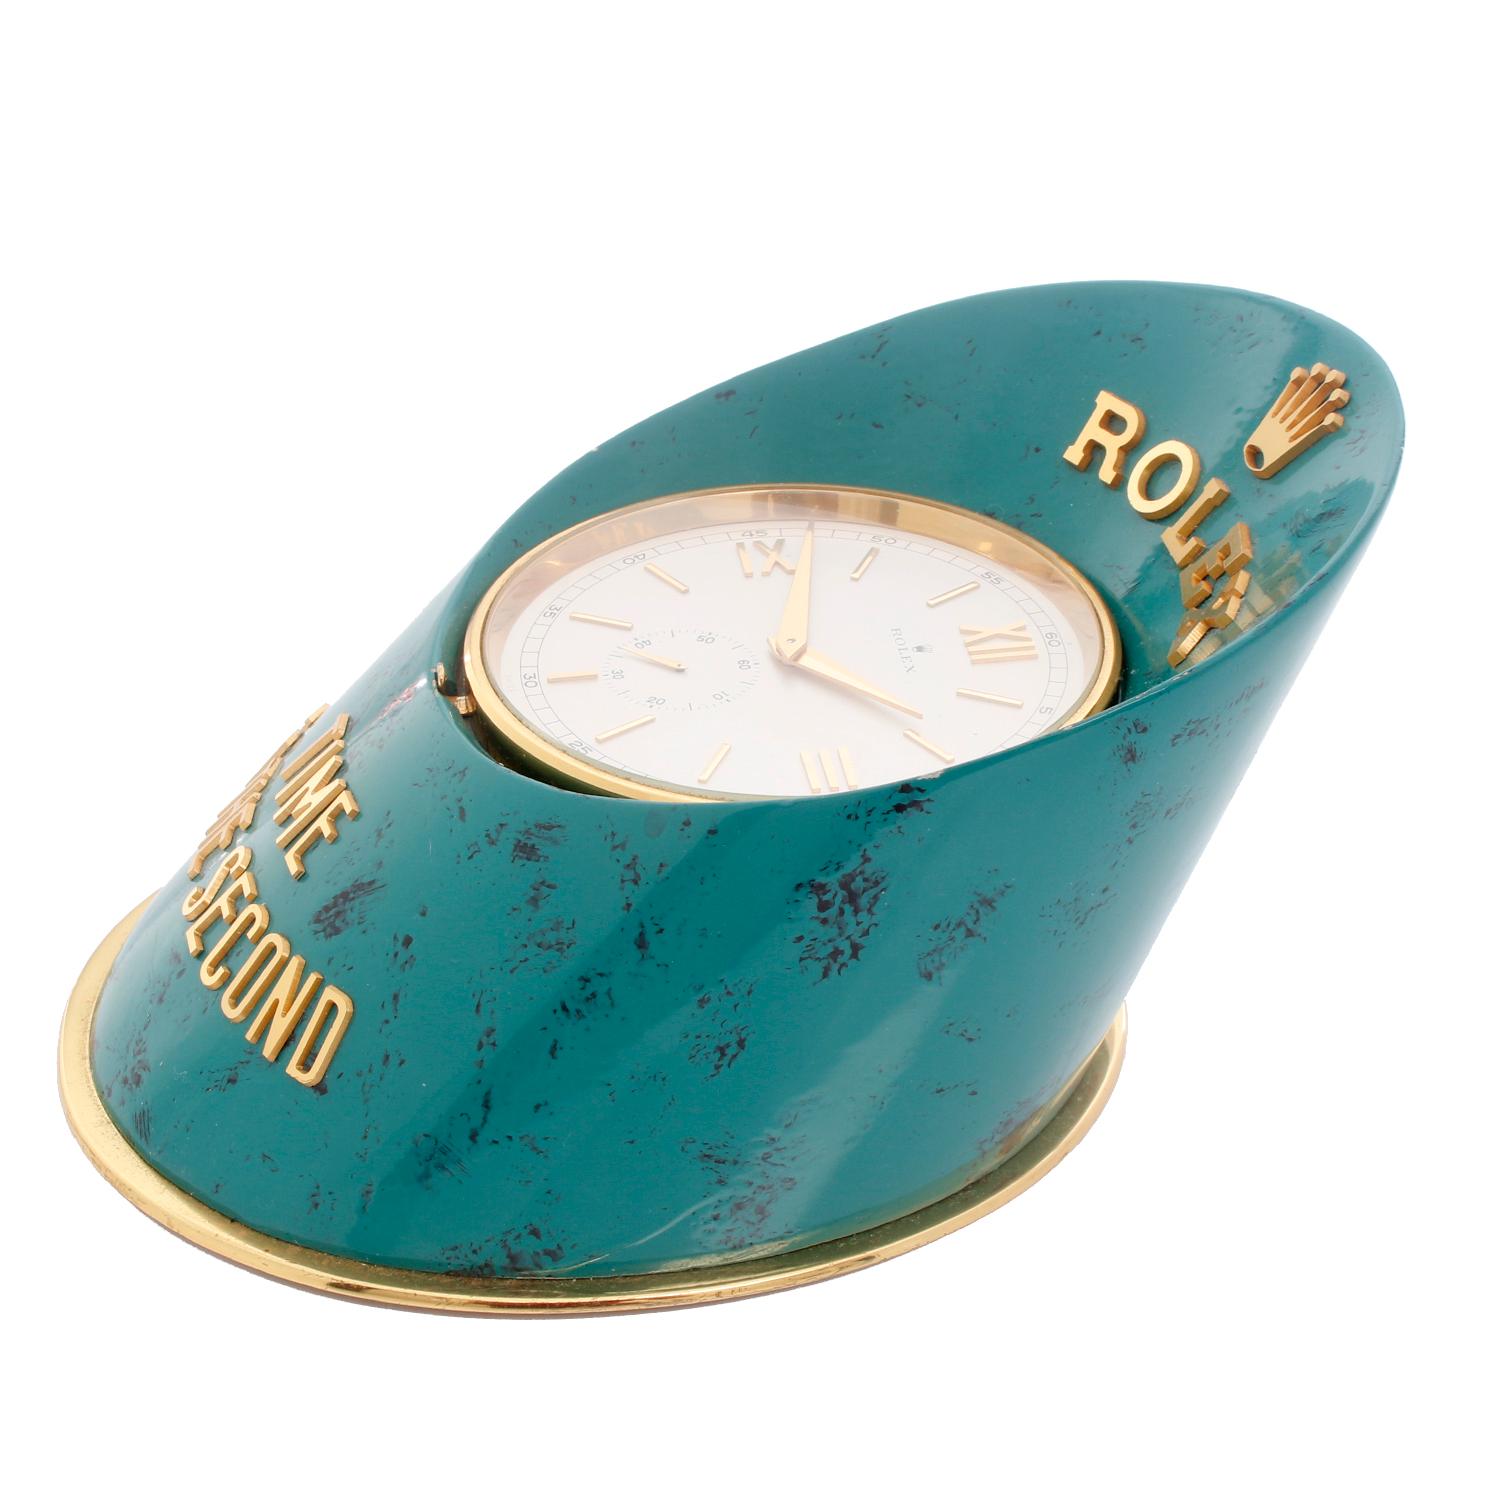 Rolex Sabot oder Huf Händler Display Uhr 1